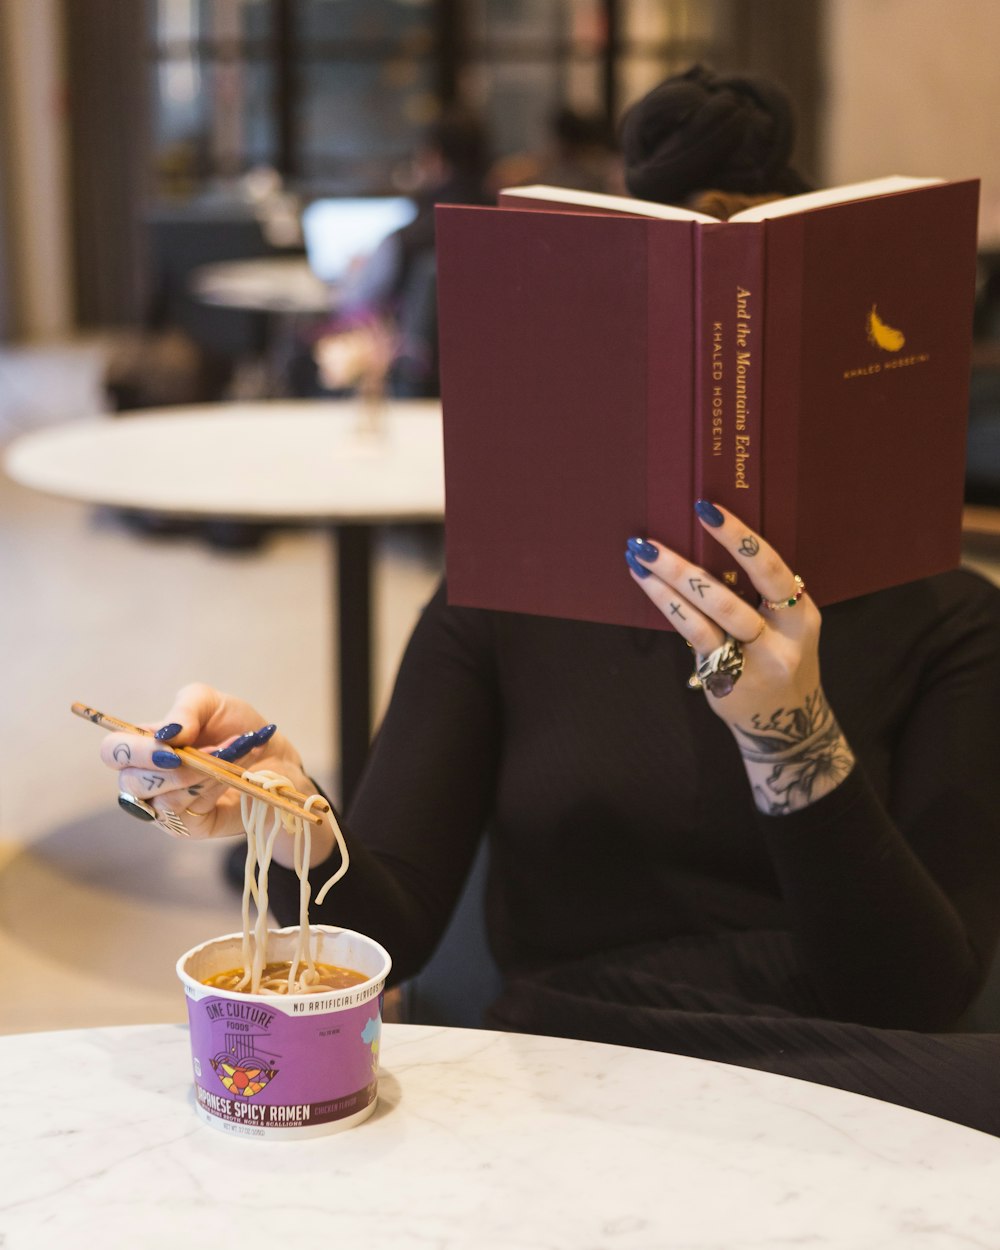 Frau sitzt am Tisch und liest Bücher, während sie Nudeln isst